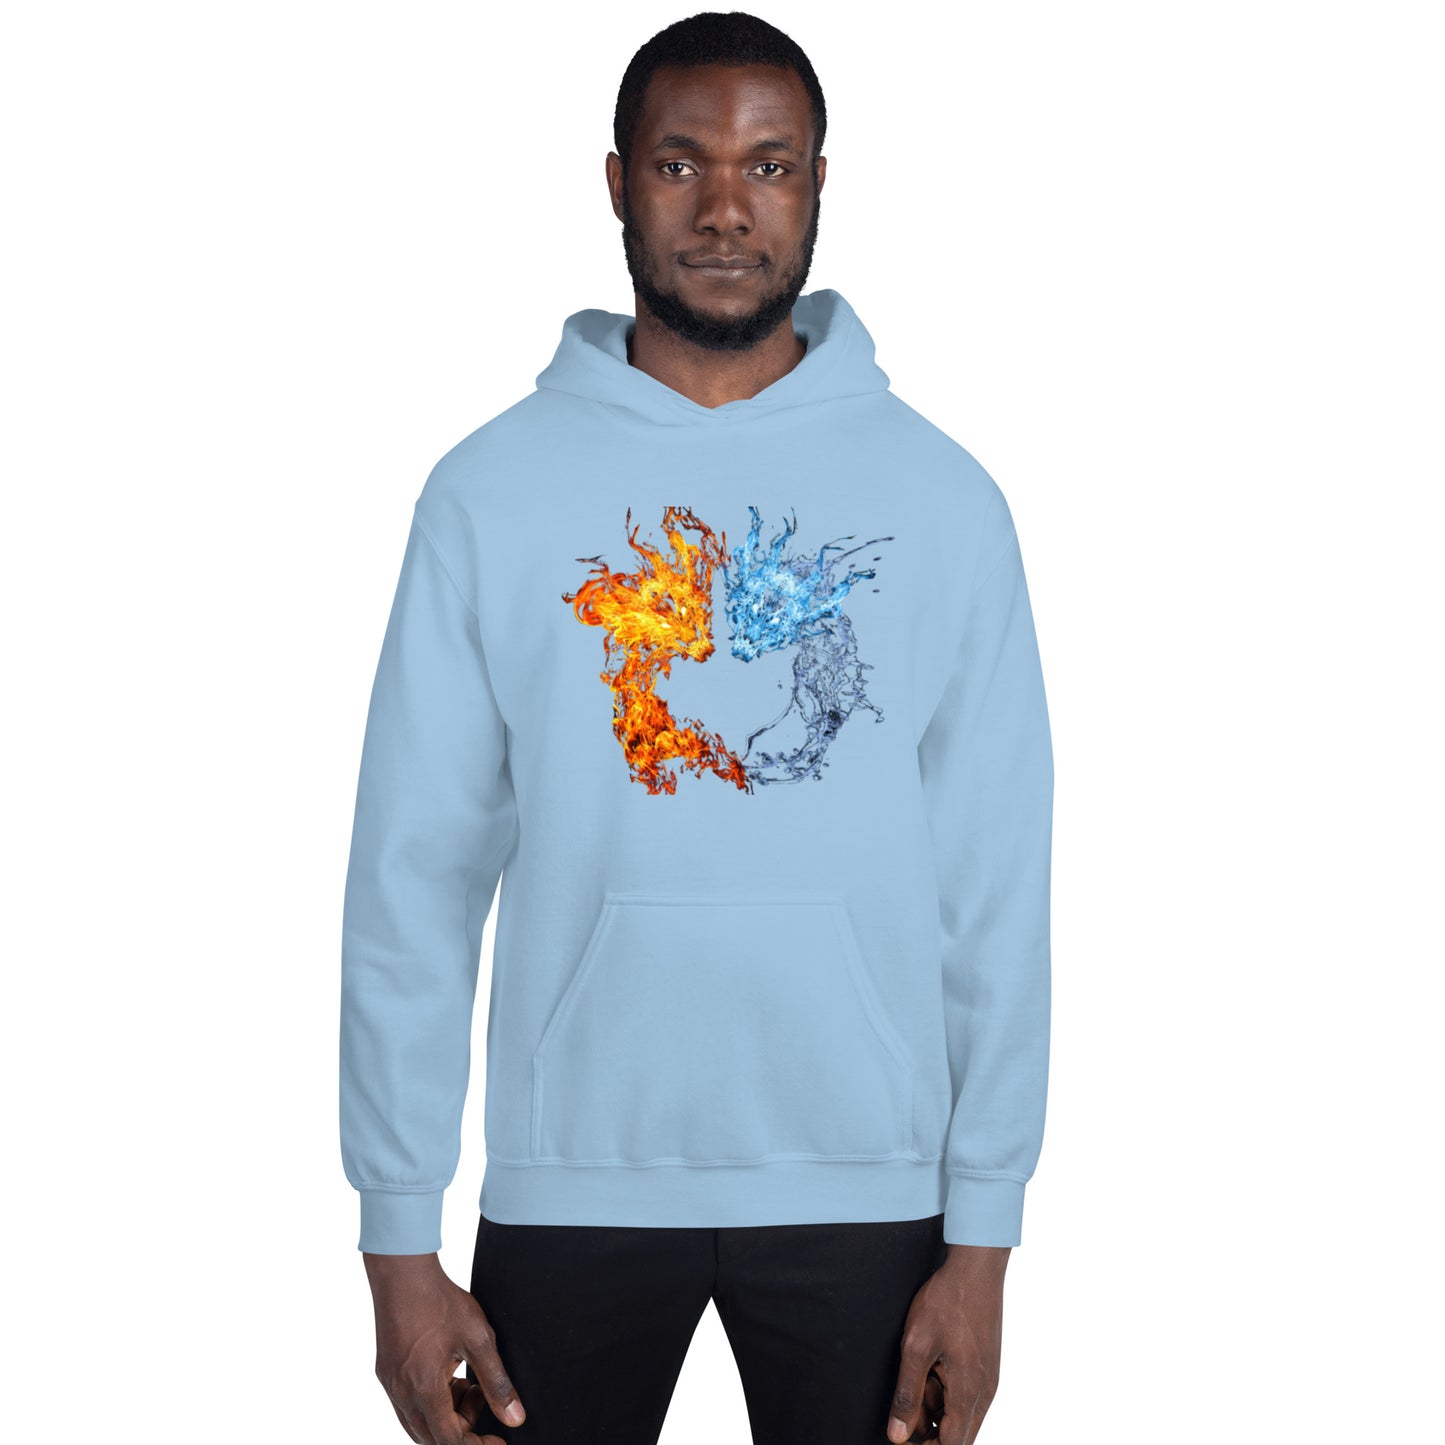 Fire & Water Dragons Unisex Hoodie